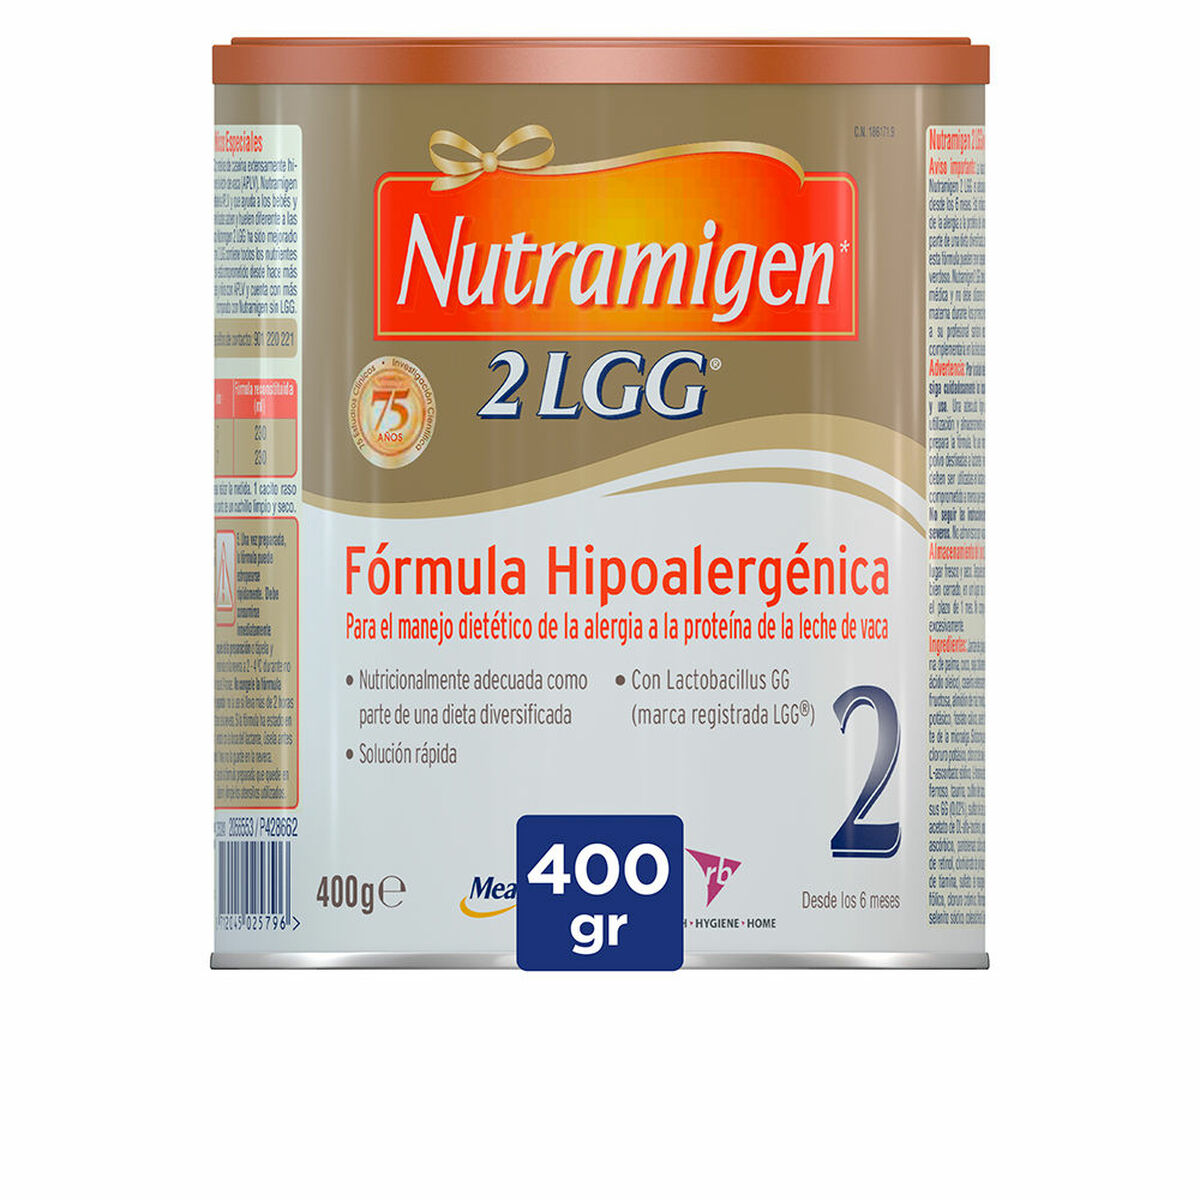 Powdered Milk Nutramigen 2 LGG 400 g